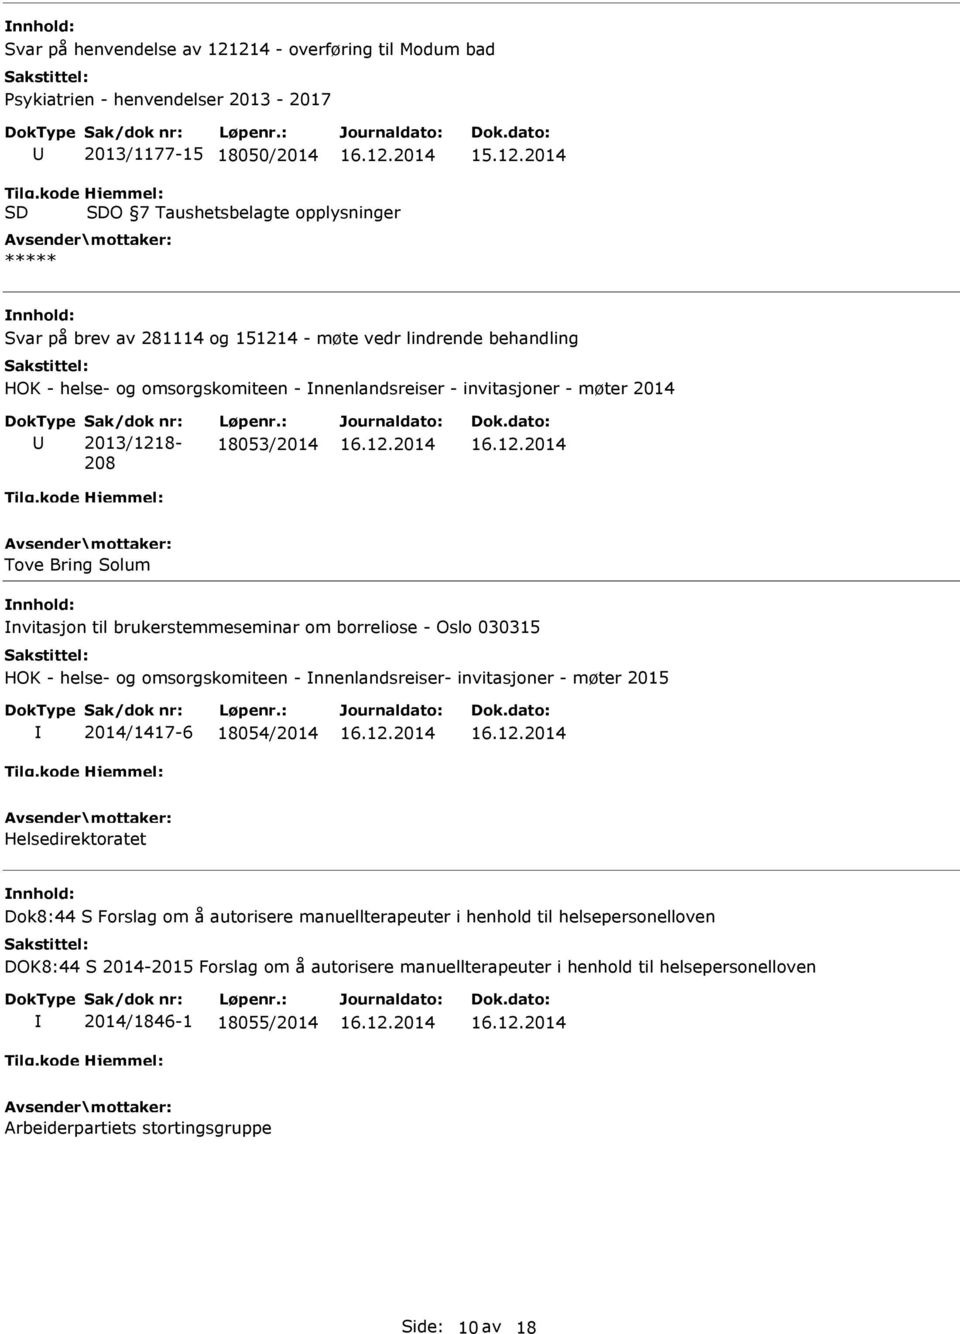 2014 2013/1218-208 18053/2014 Tove Bring Solum nvitasjon til brukerstemmeseminar om borreliose - Oslo 030315 HOK - helse- og omsorgskomiteen - nnenlandsreiser- invitasjoner - møter 2015 2014/1417-6